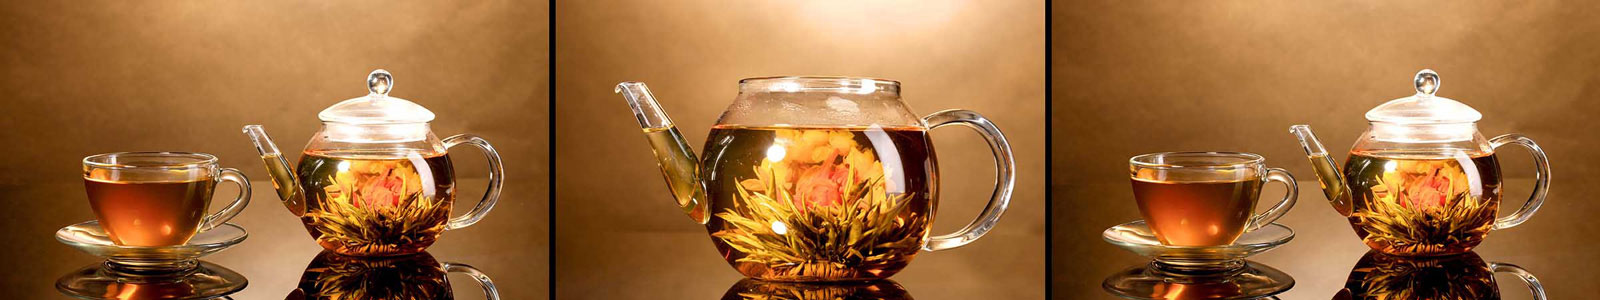 №2450 - Стеклянные чайник и чашка с экзотическим чаем и цветами на коричневом фоне